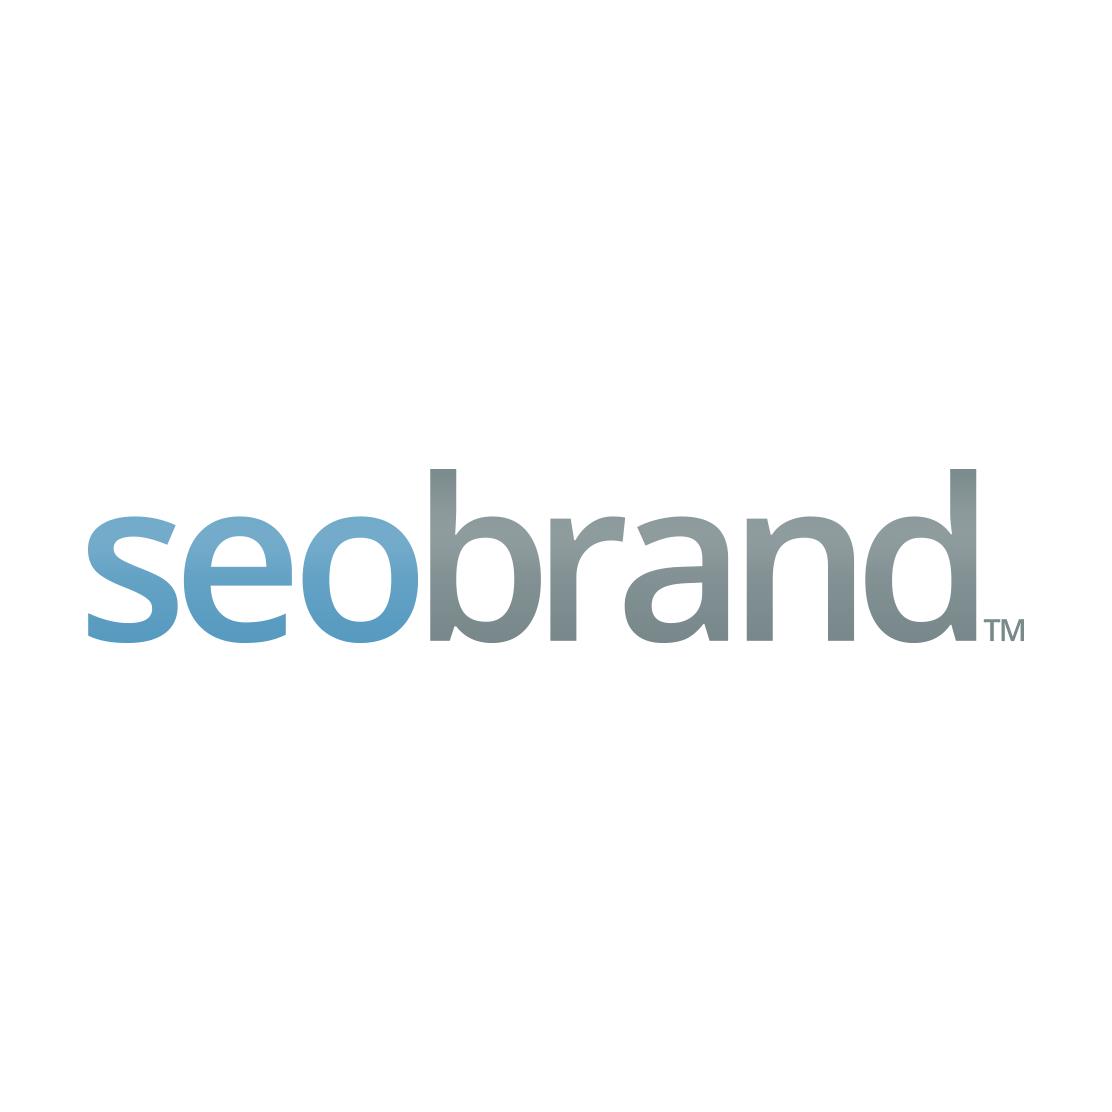 Top Philly SEO Company Logo: SEO Brand